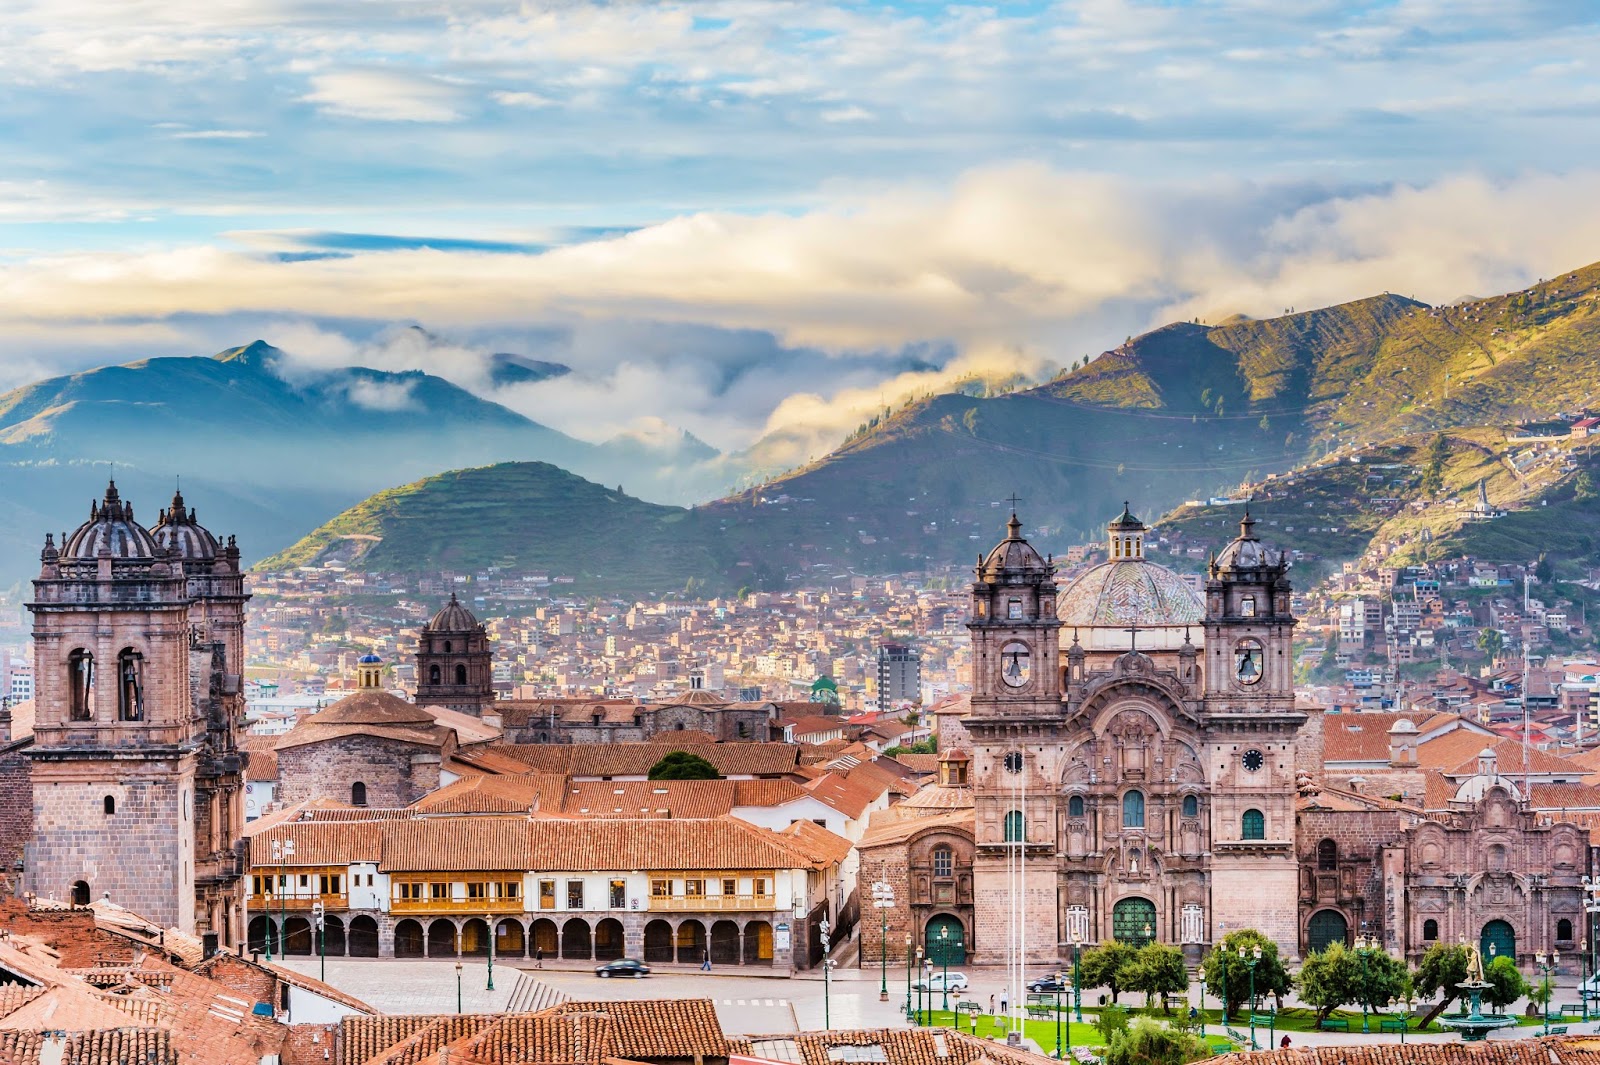 Cusco 'La Ciudad Imperial' (I) | Viajes del Perú - Travel Blog sobre el